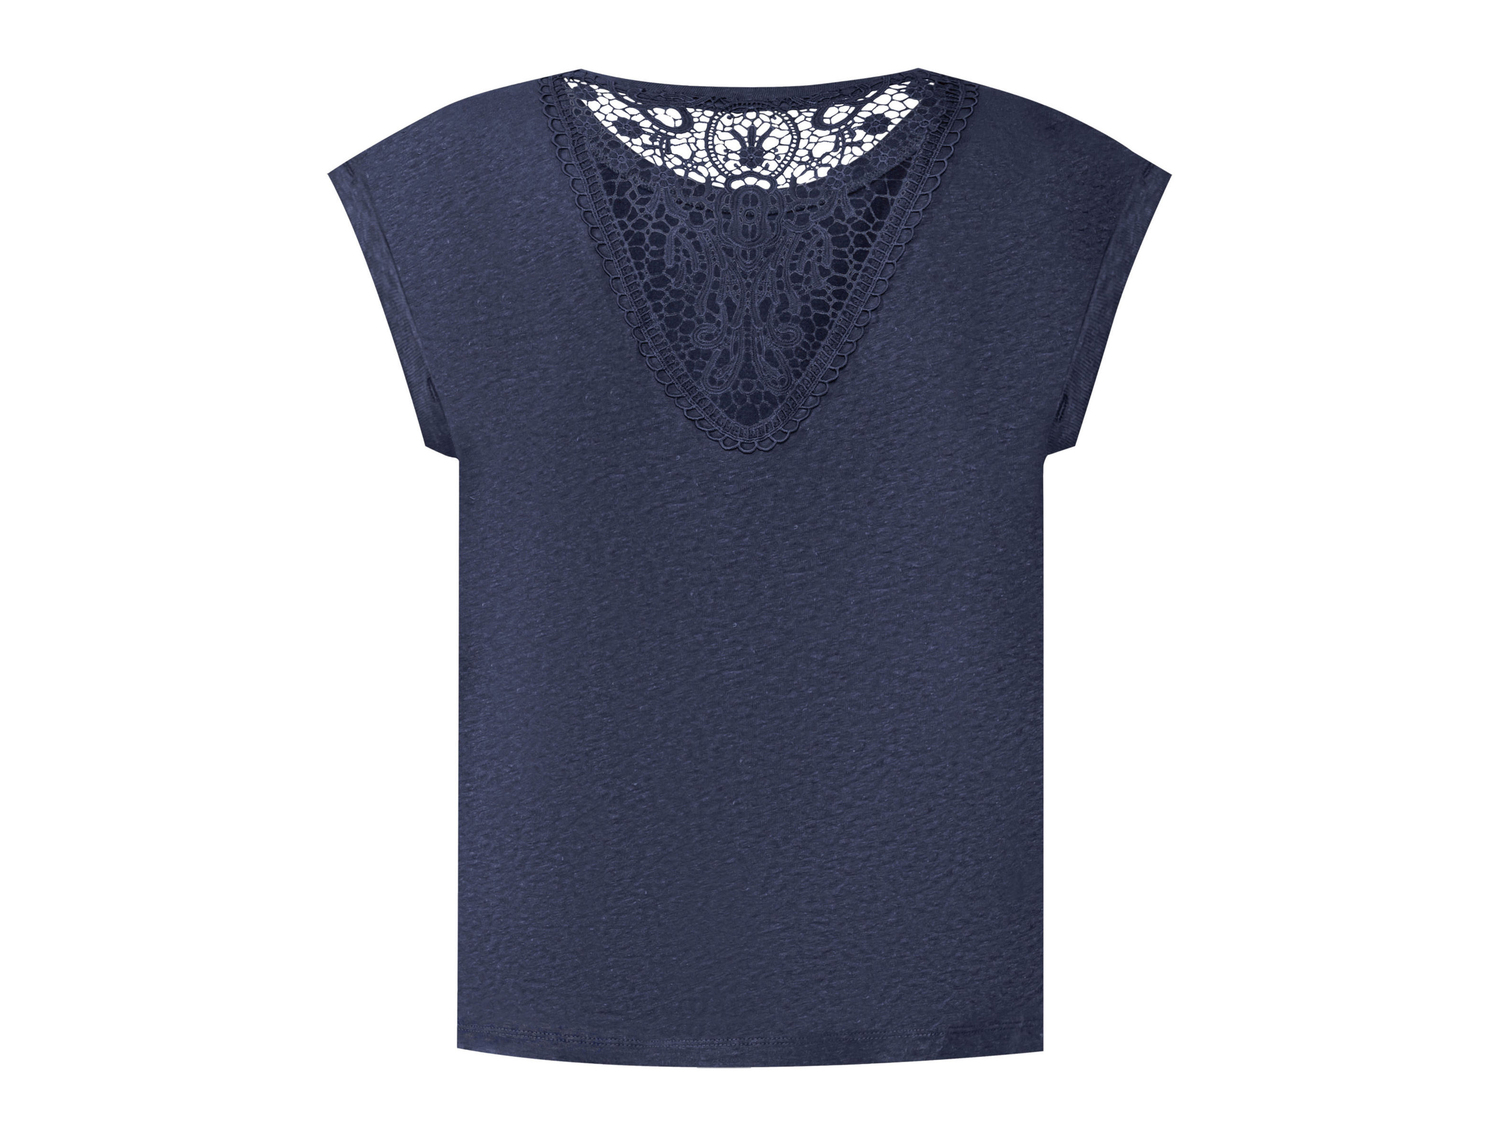 T-Shirt in canapa da donna Esmara, prezzo 8.99 &#8364; 
Misure: S-L 
- Con cotone ...